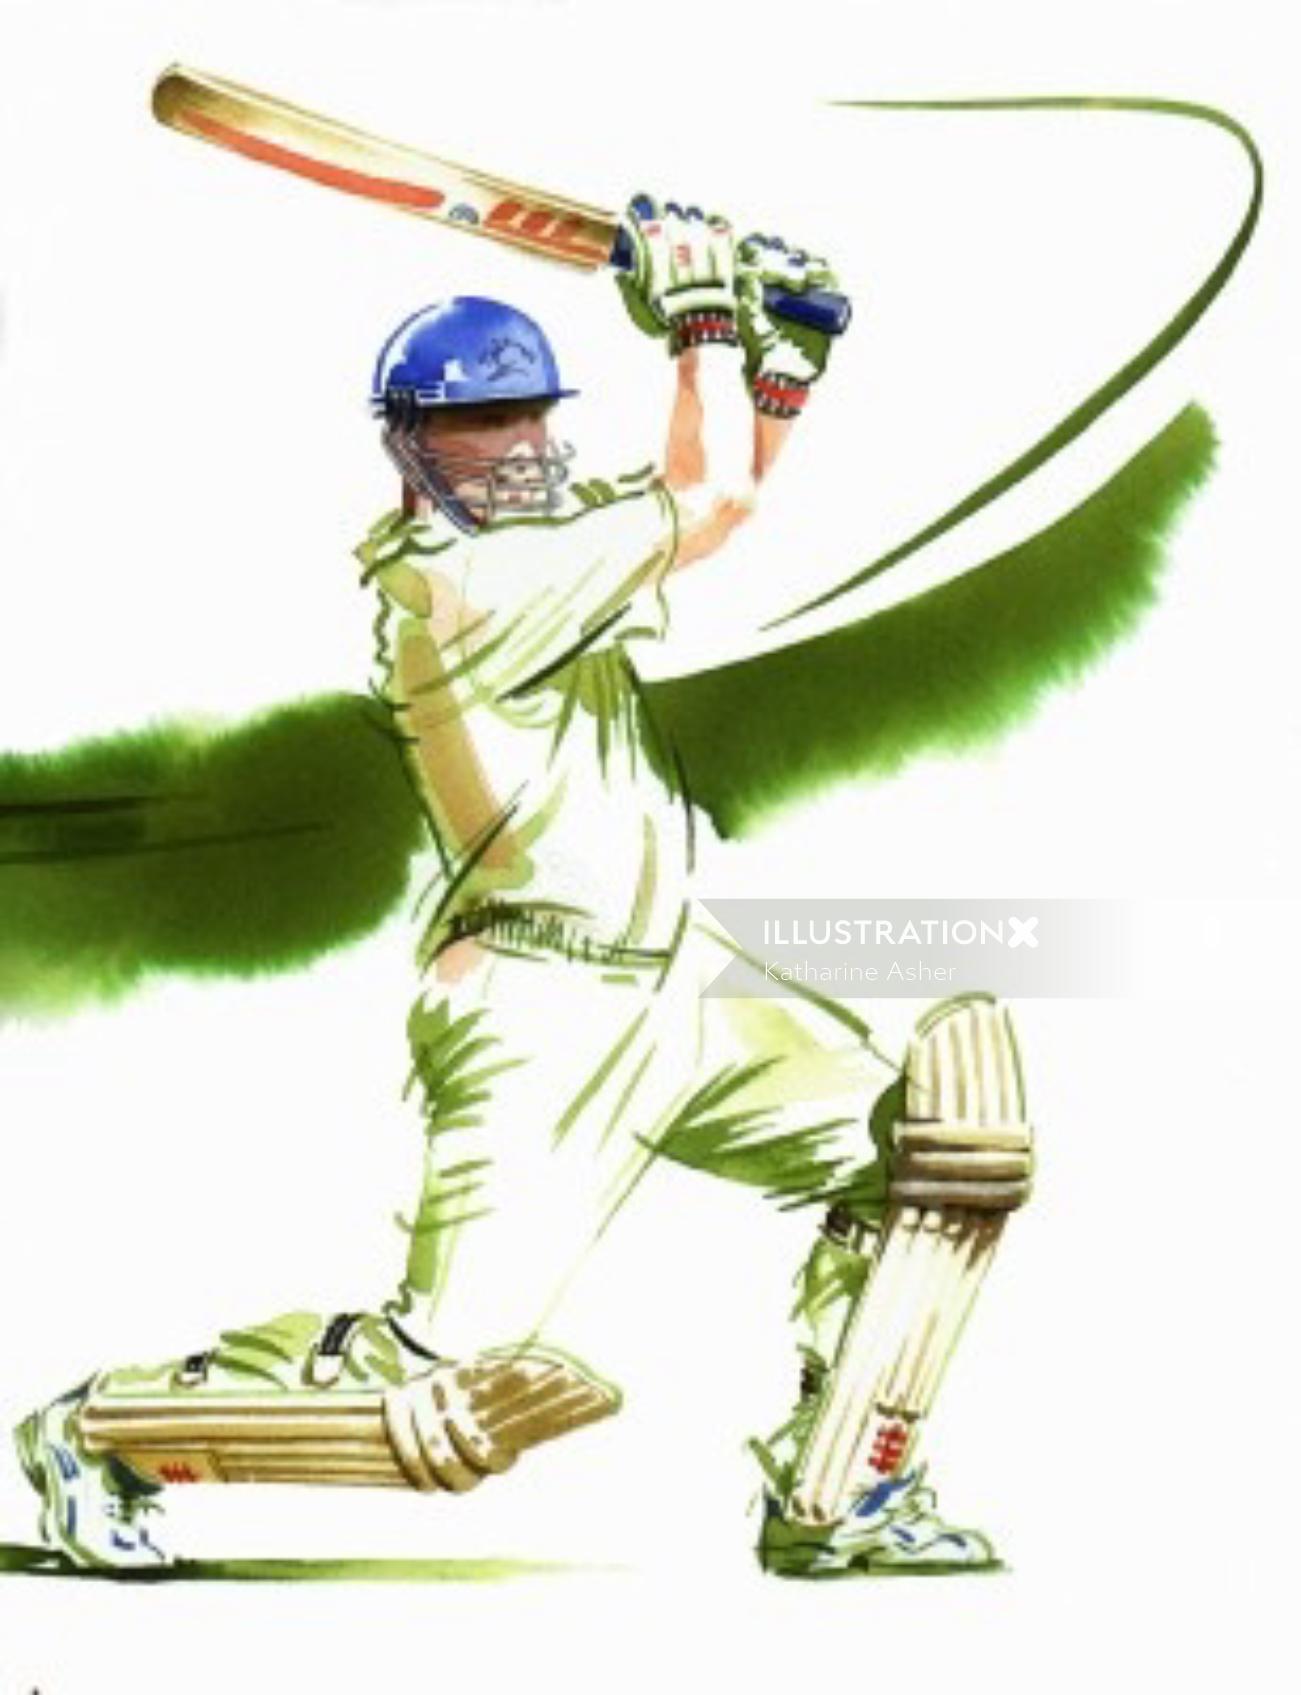 Illustration de cricket par Katharine Asher